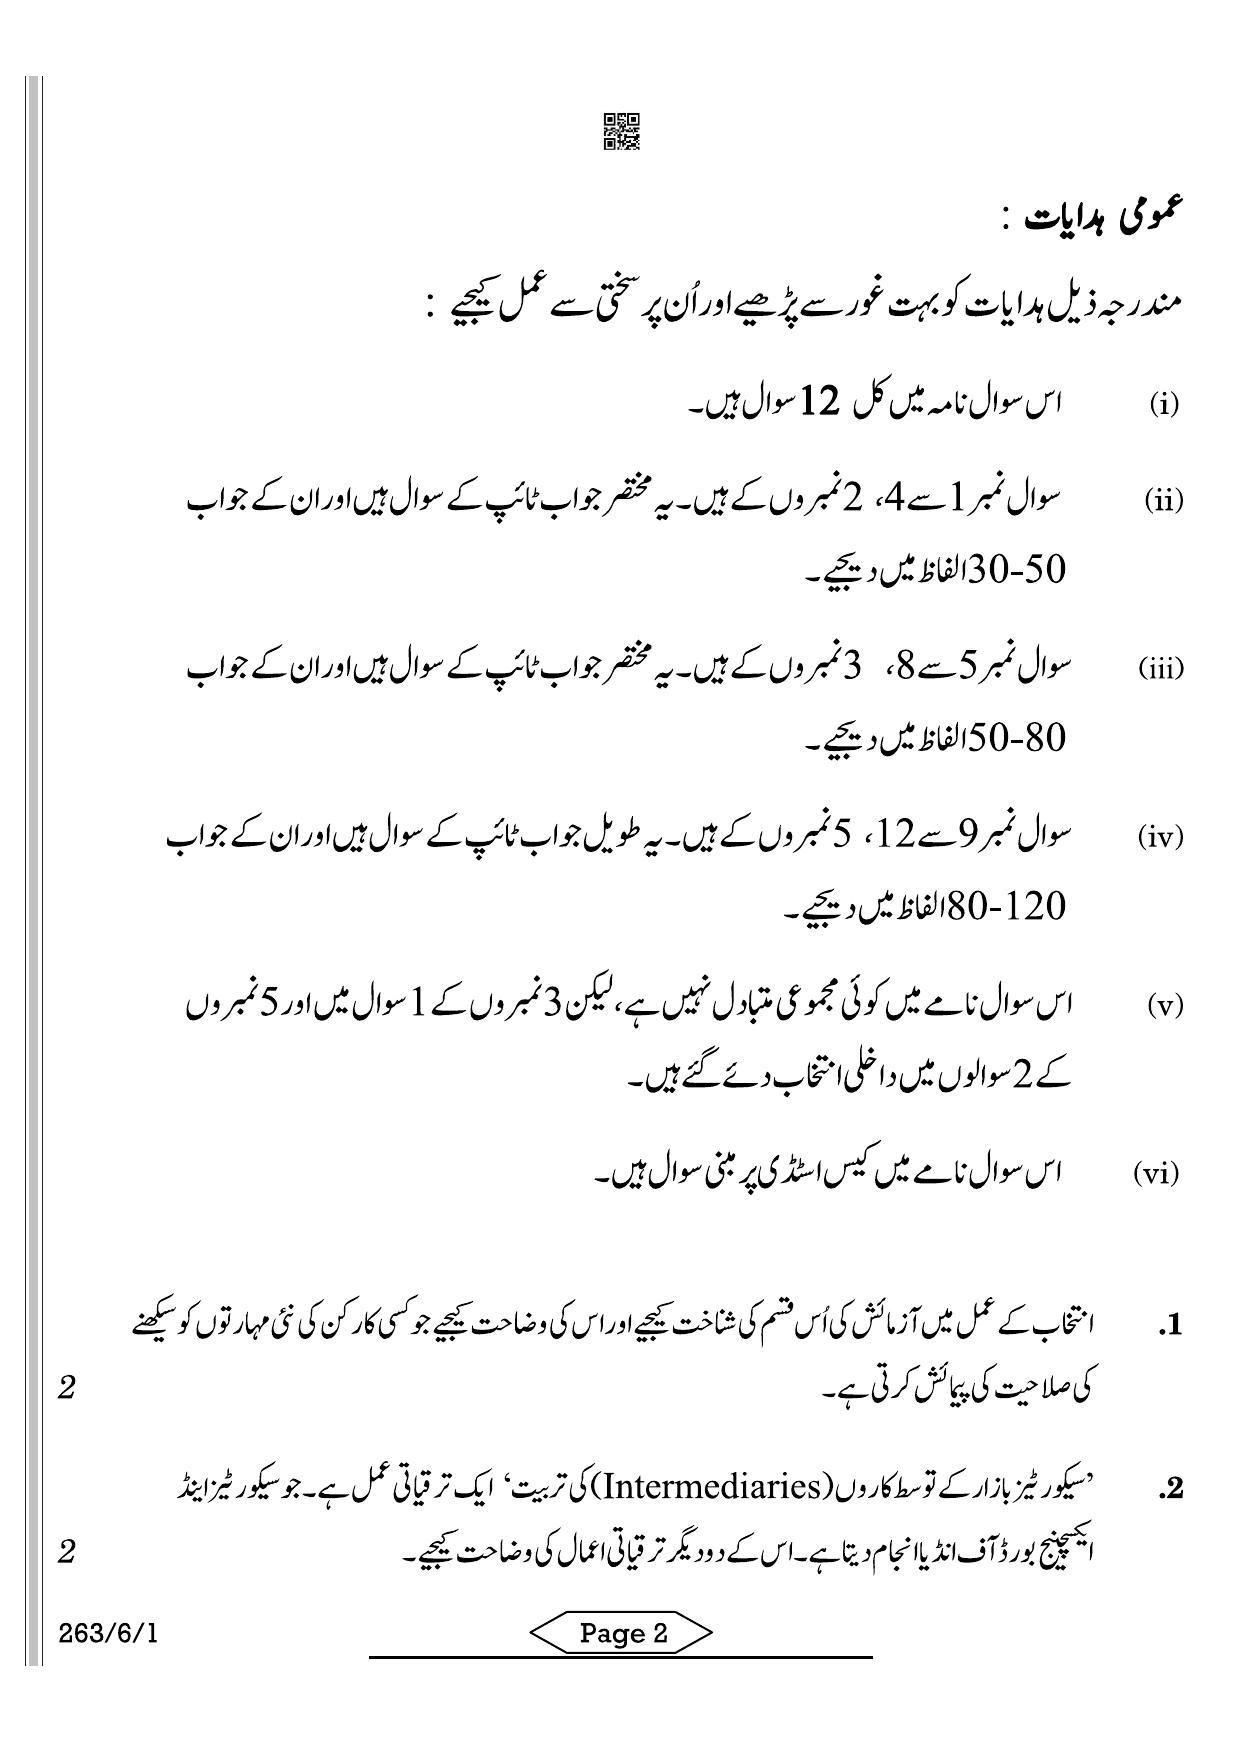 CBSE Class 12 263-6-1 Business Studies Urdu 2022 Compartment Question Paper - Page 2